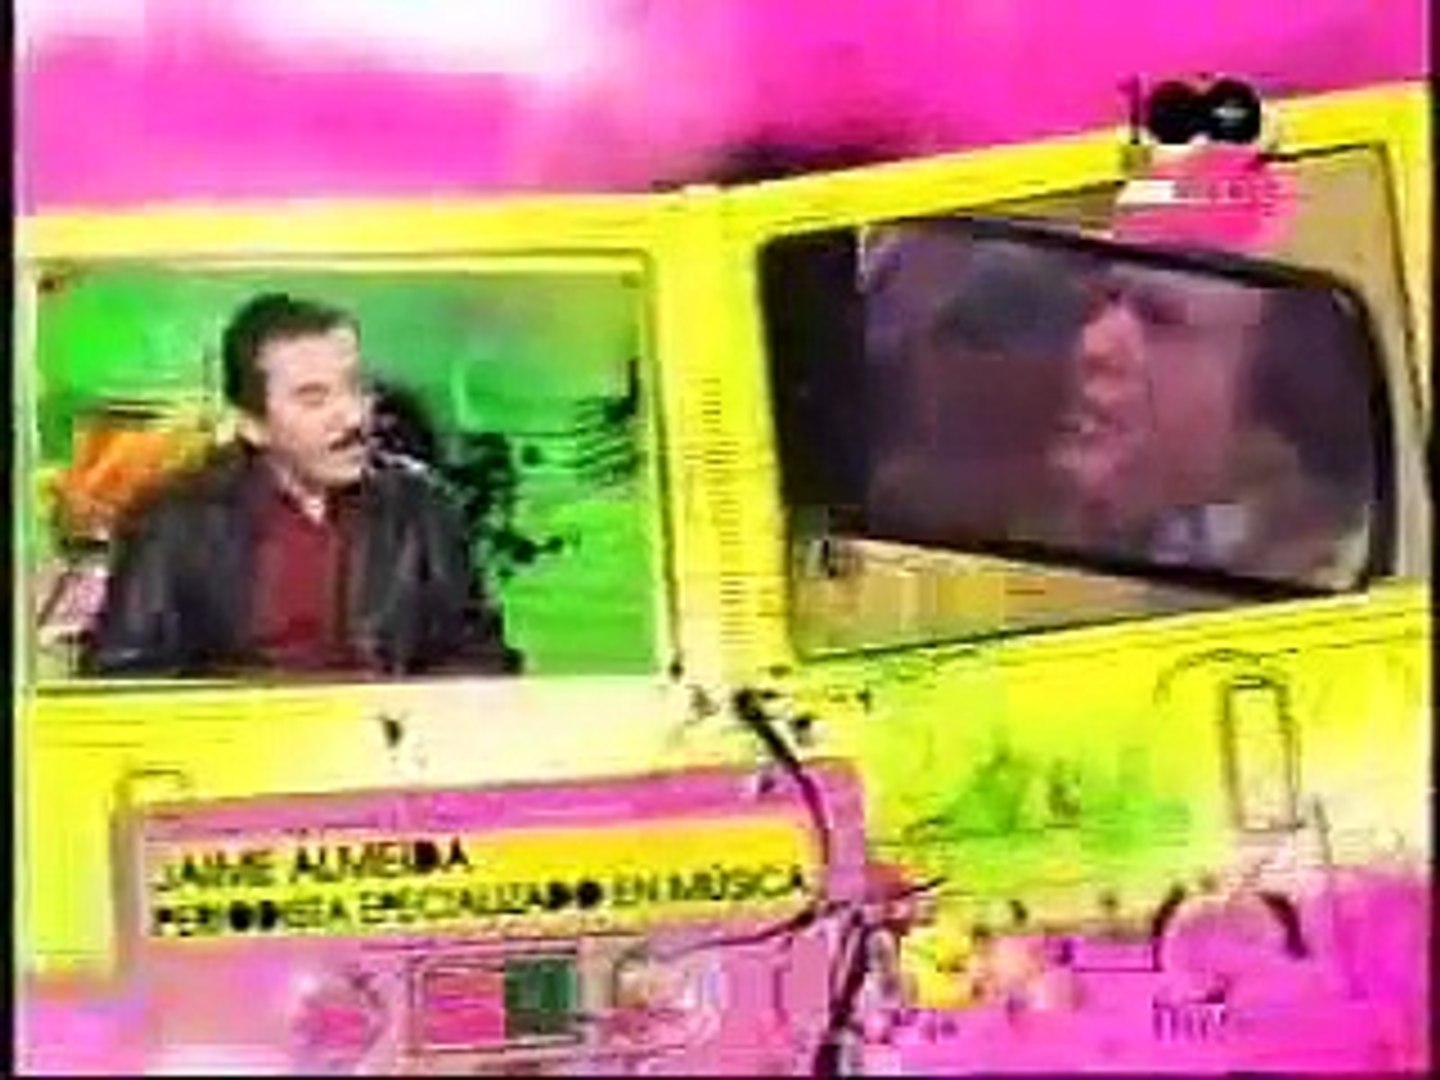 LAS 100 MAS GRANDIOSAS CANCIONES DE LOS 80S EN ESPAÑOL - VH1 - 2009  (Completo) - Dailymotion Video